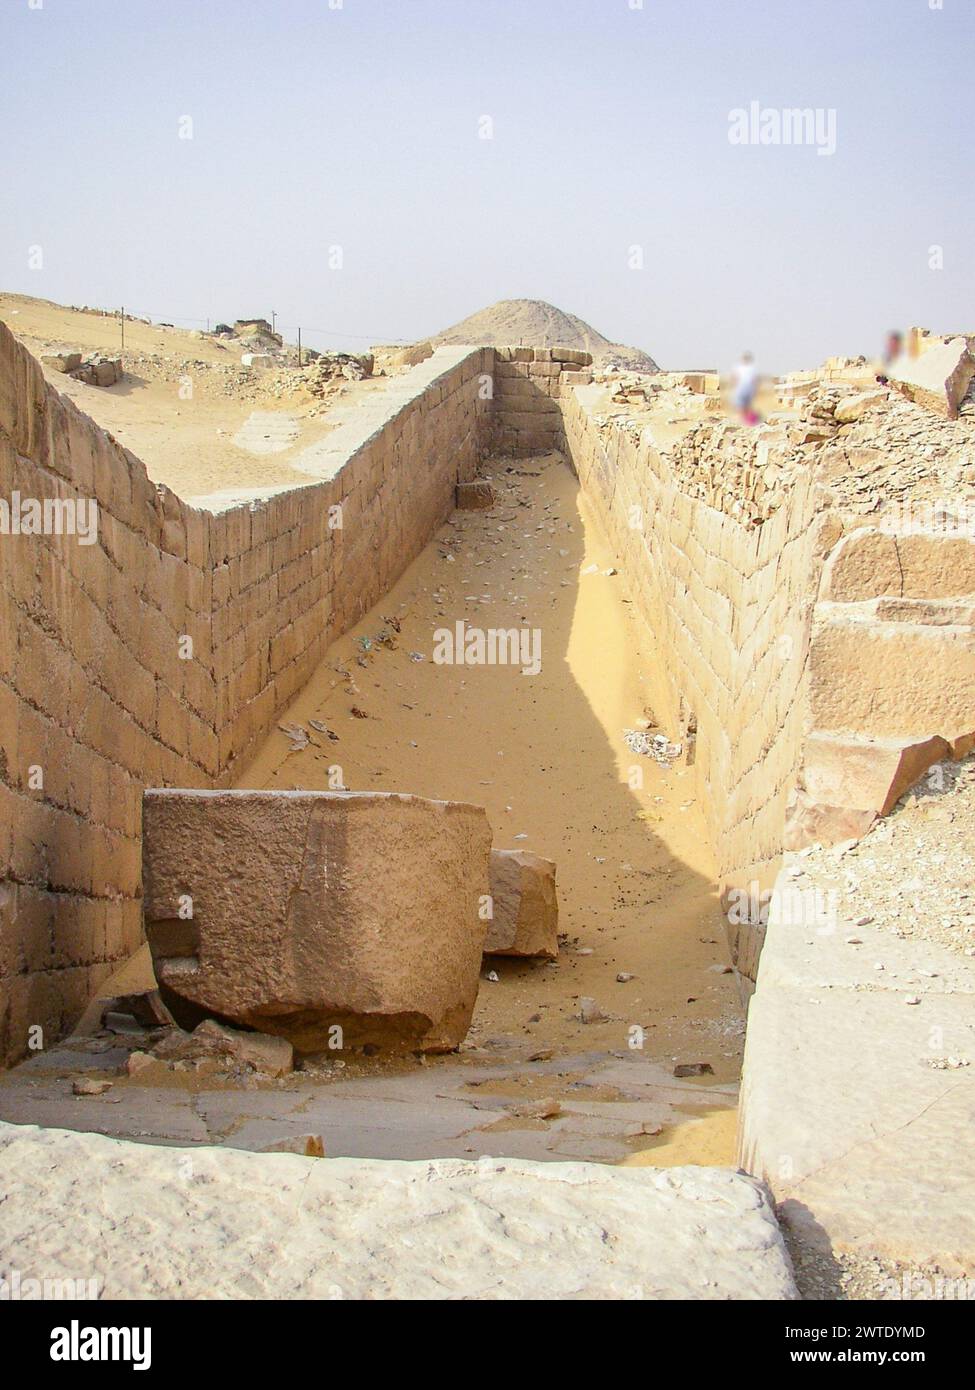 Egitto, Saqqara, Unas Barque Pits. o forse sono barques finte, in pietra. Foto Stock